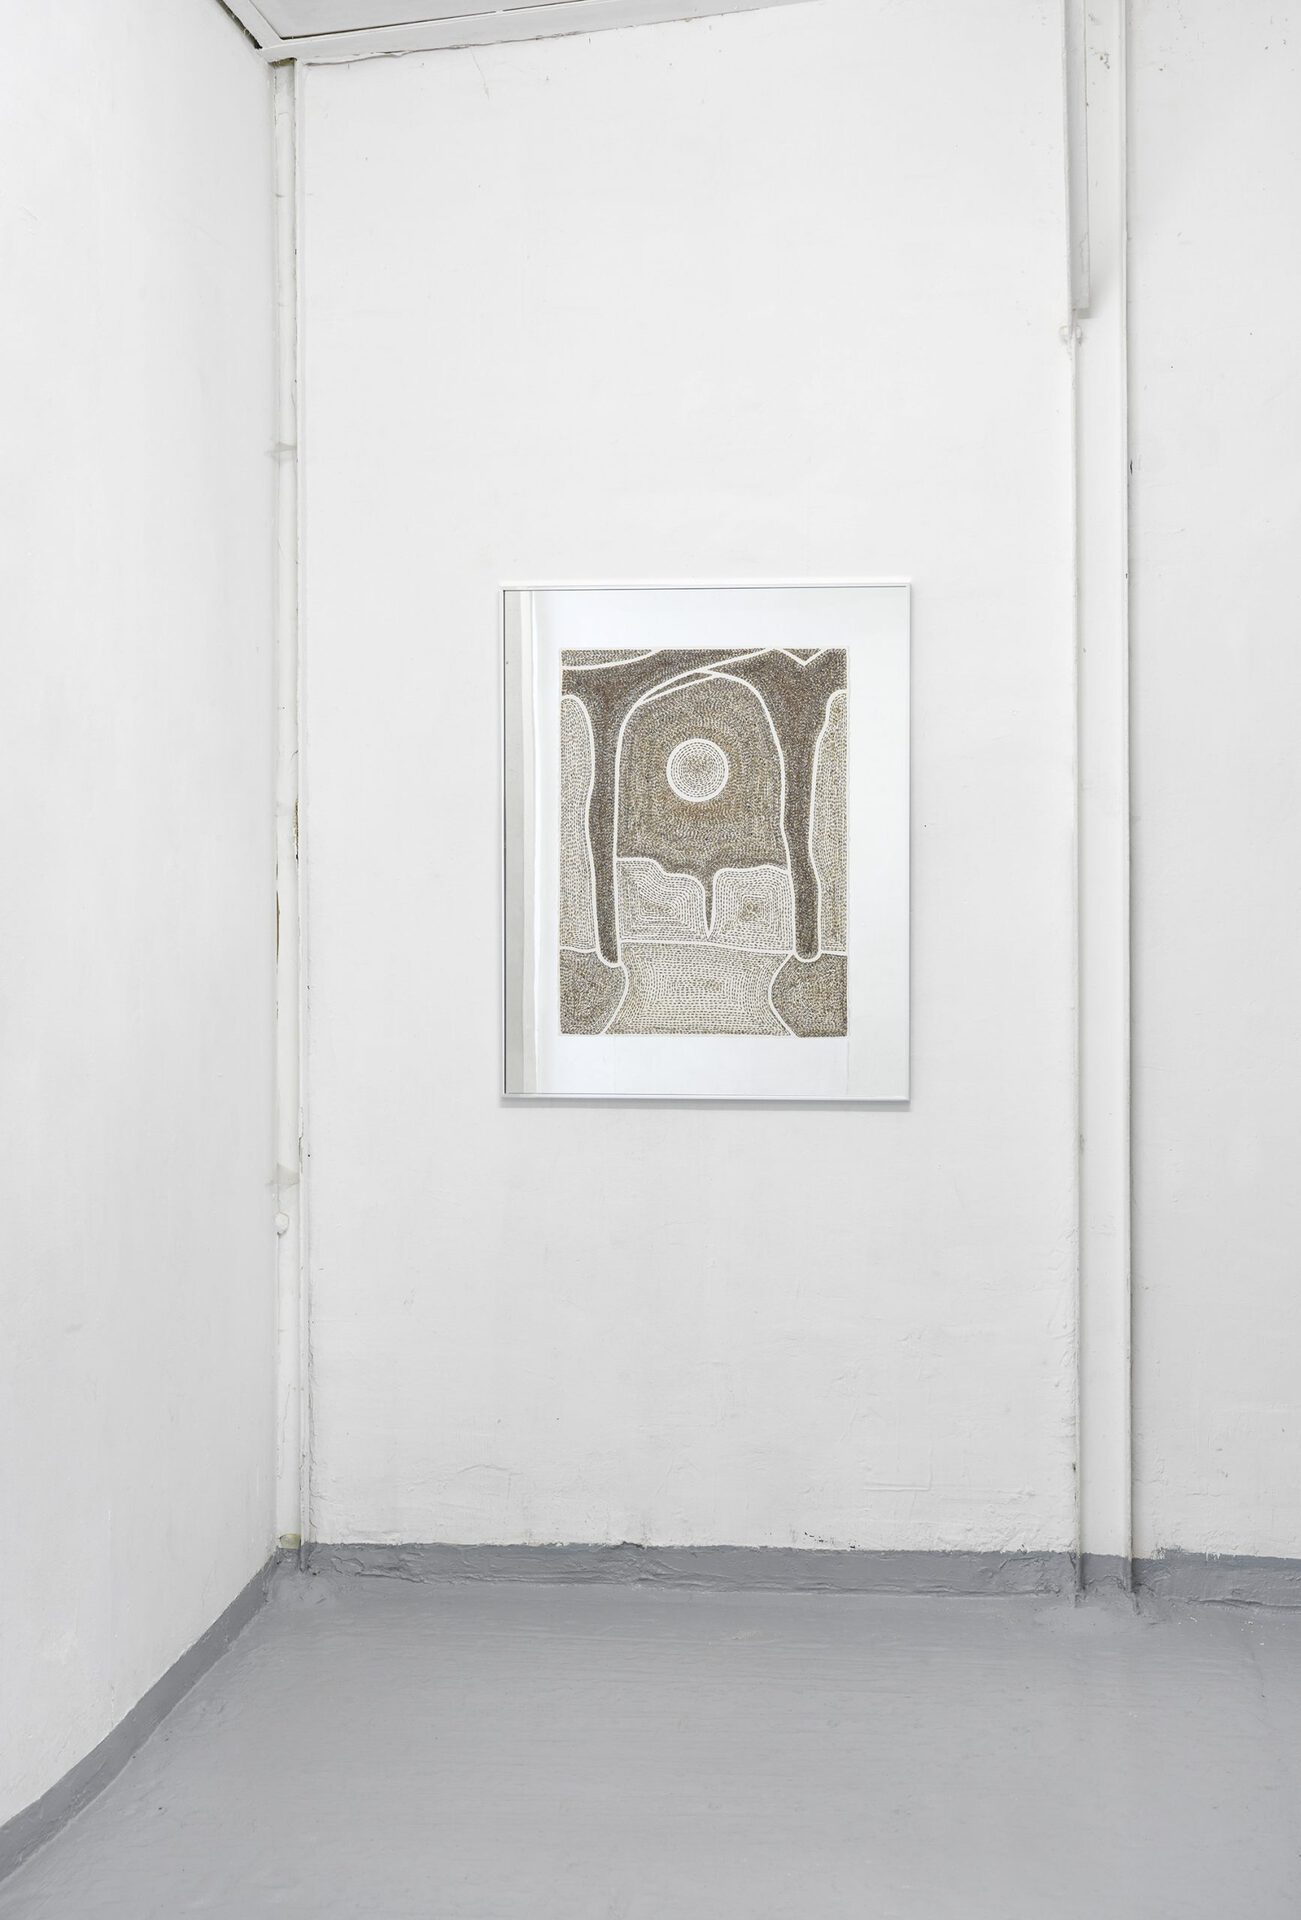 Tessa Perutz, Forest Canopy at Dusk (La Lune Lavande, Fleurs sûr Miroir), 2020, lavender flowers on paper on mirror, framed 100x80 cm